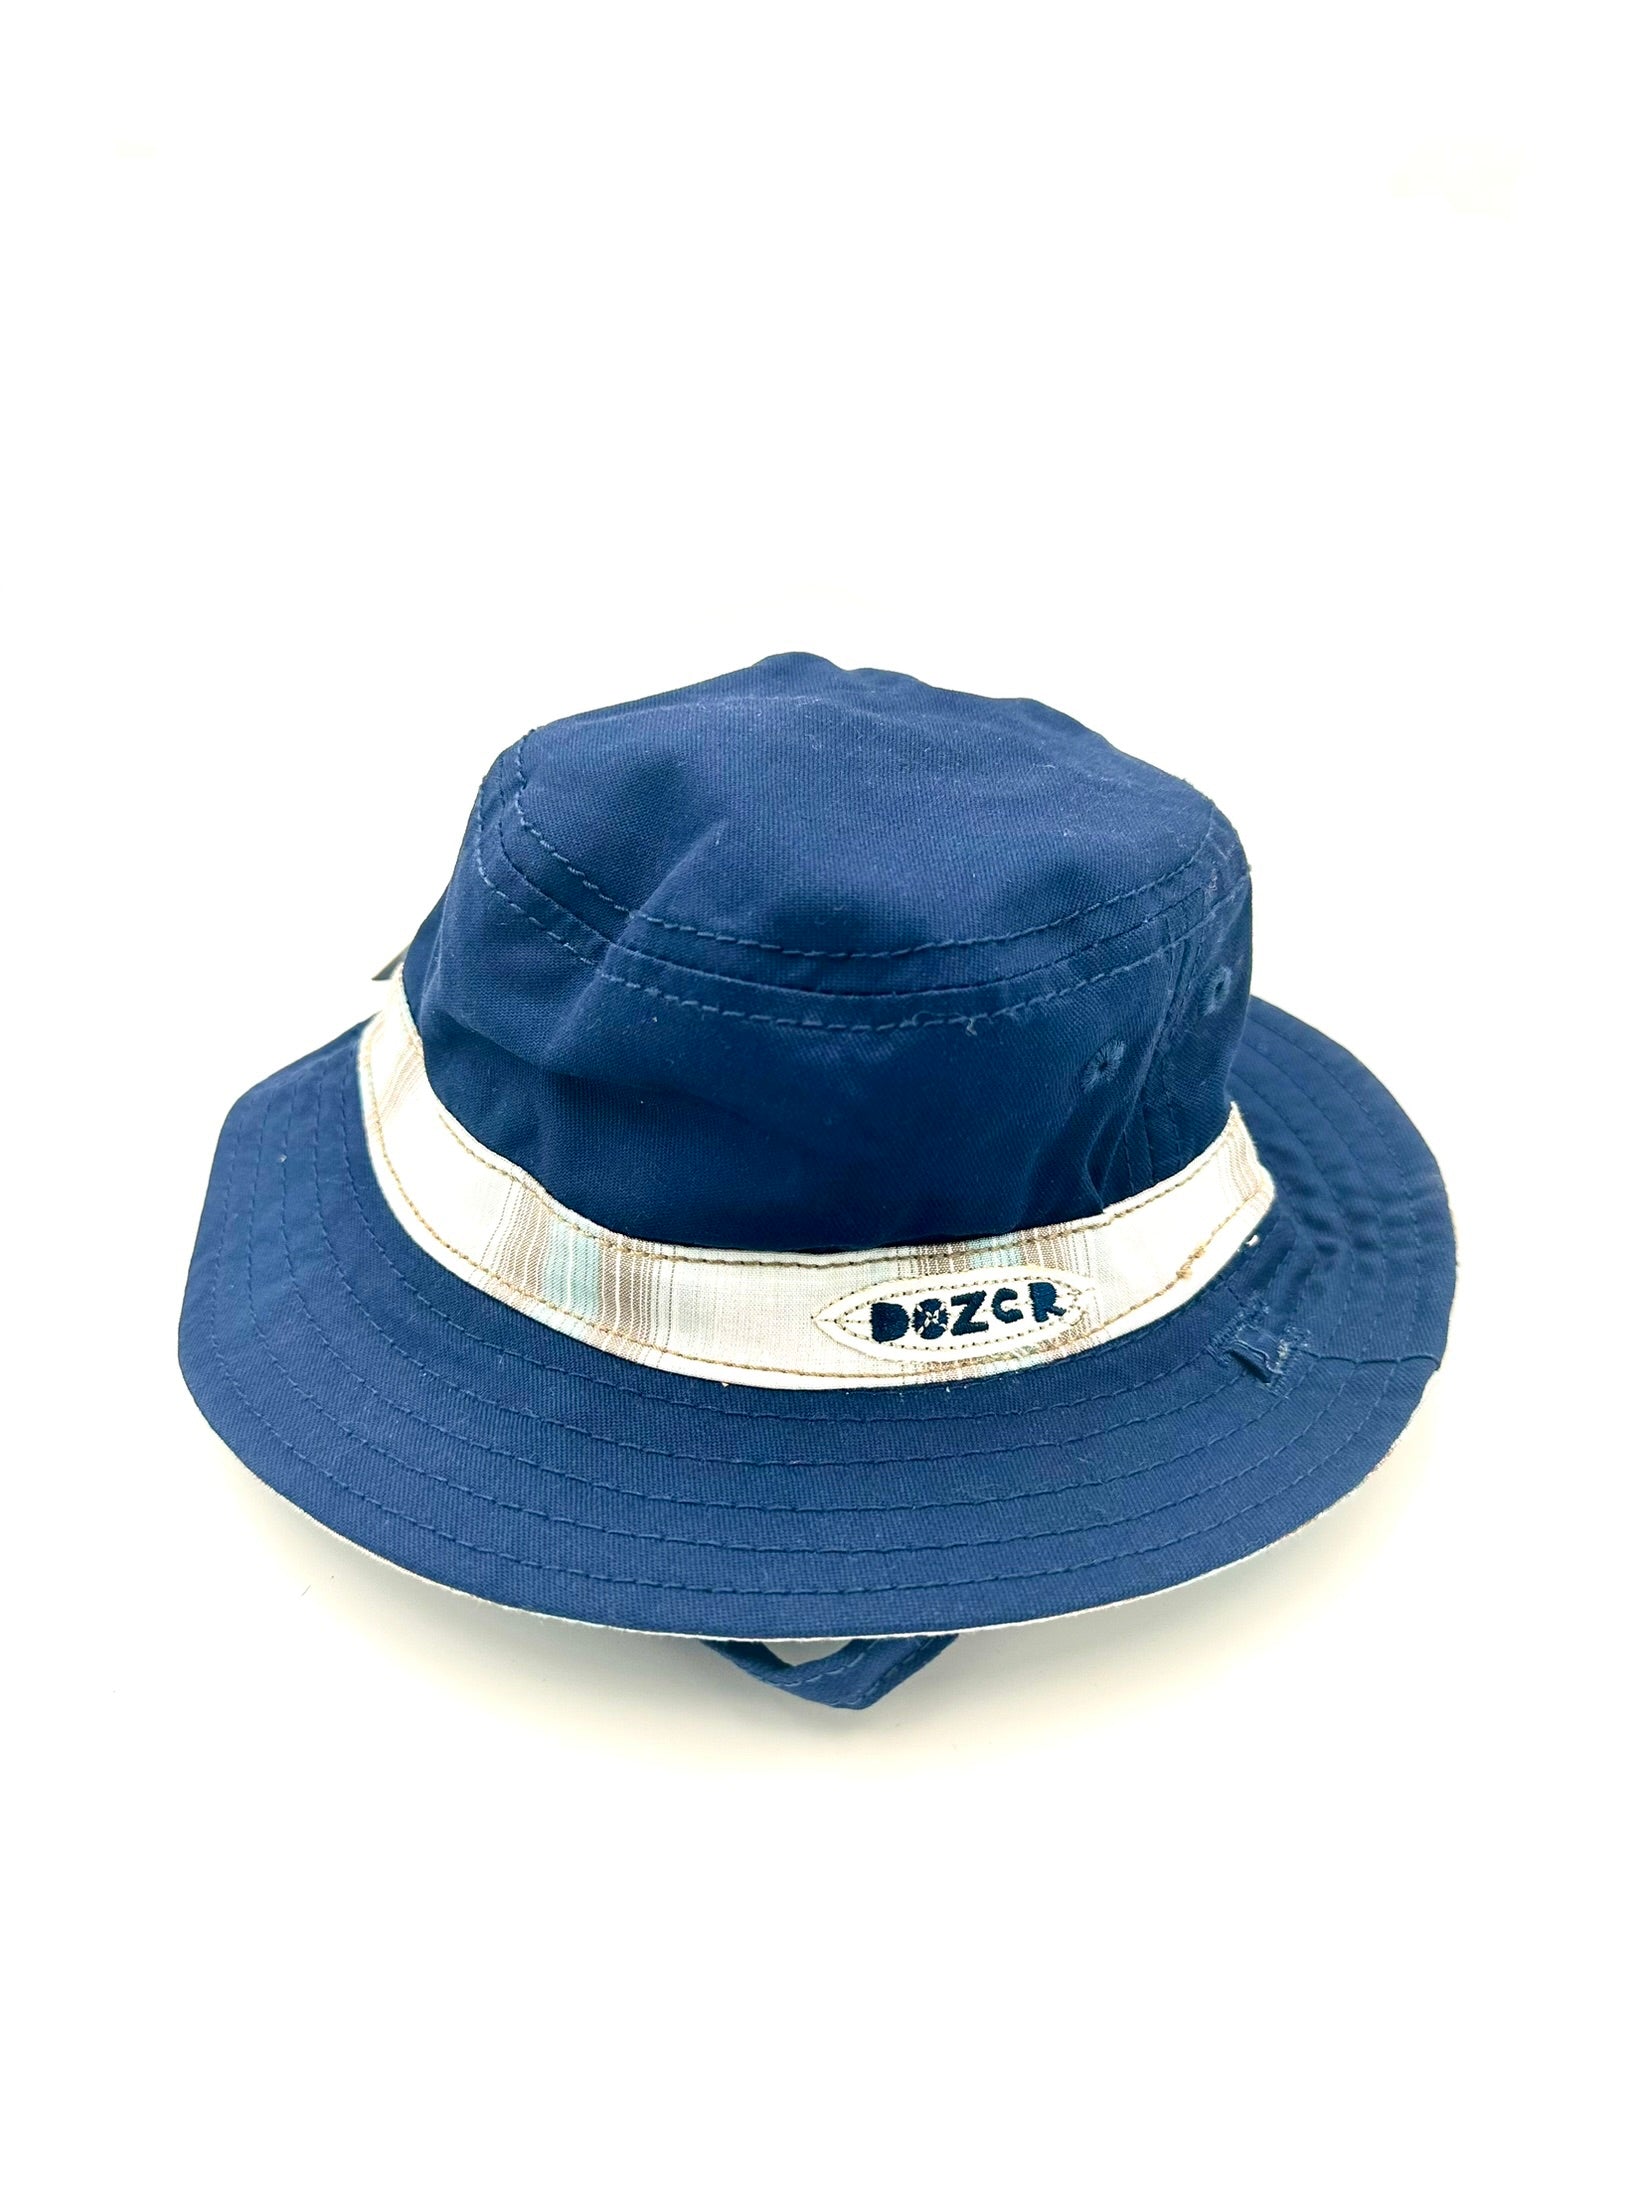 Dozer Kids Bucket Hat - Navy Blue Ethan